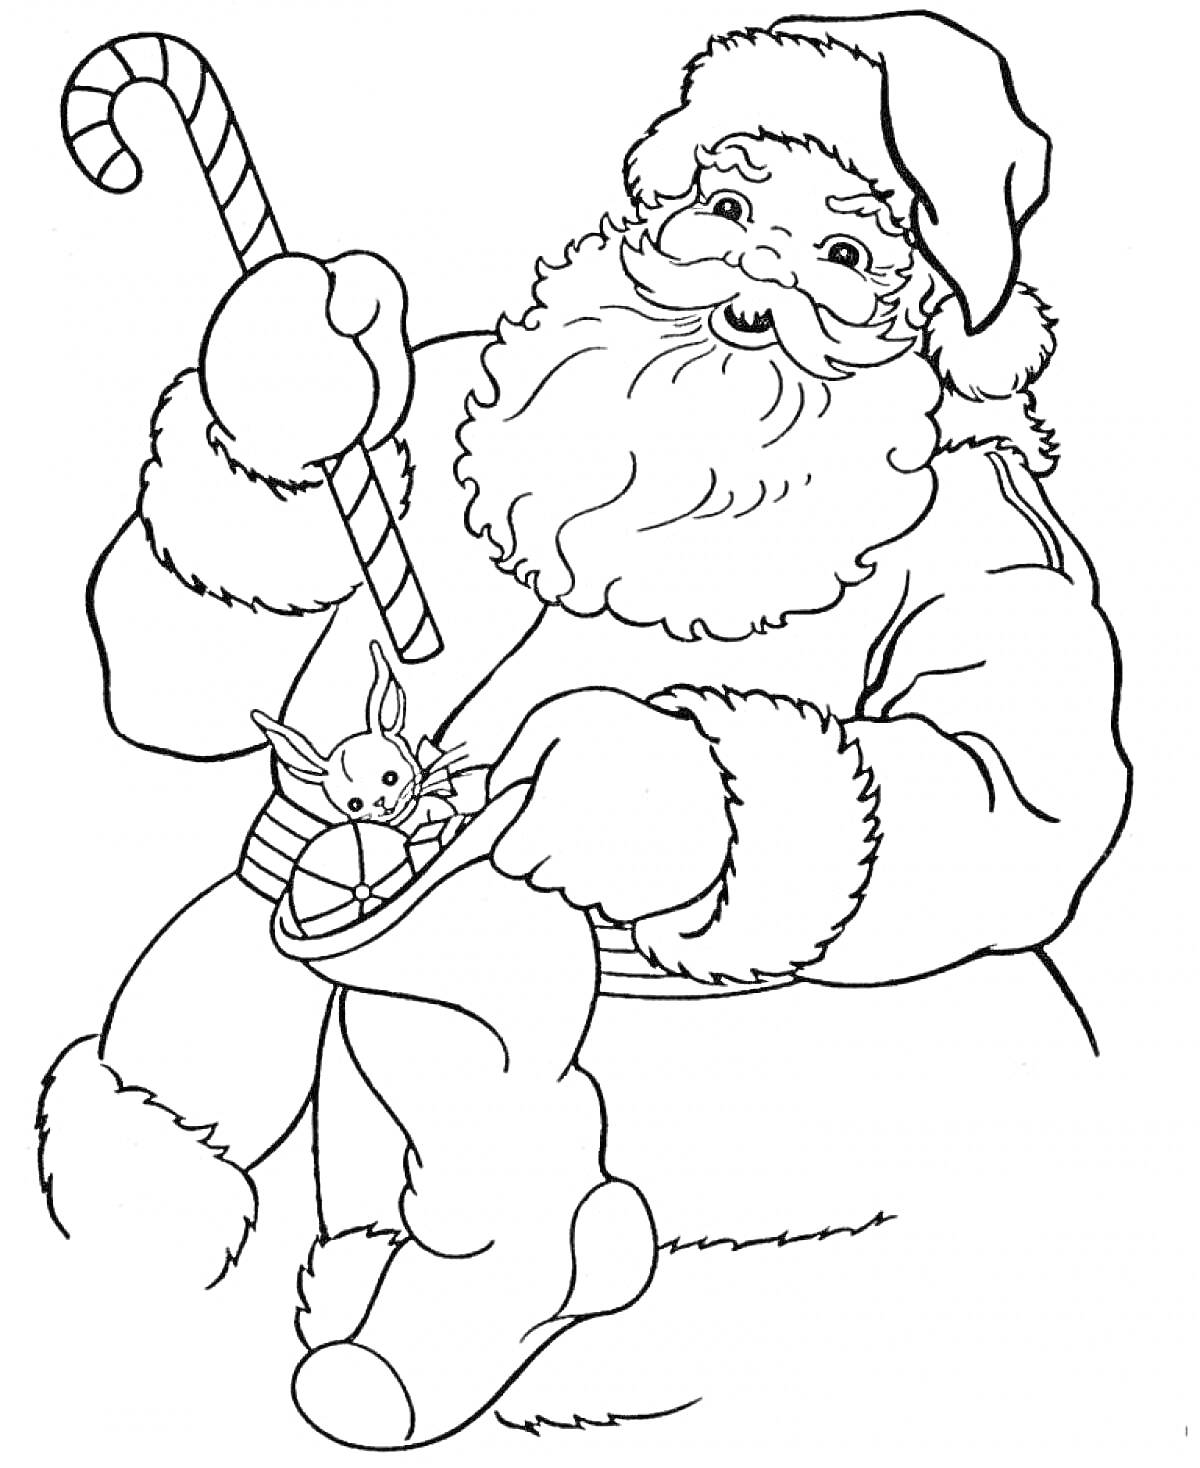 Санта Клаус с зайчиком и леденцом. В мешке есть зайчик и шарик, Санта держит леденец в виде трости.